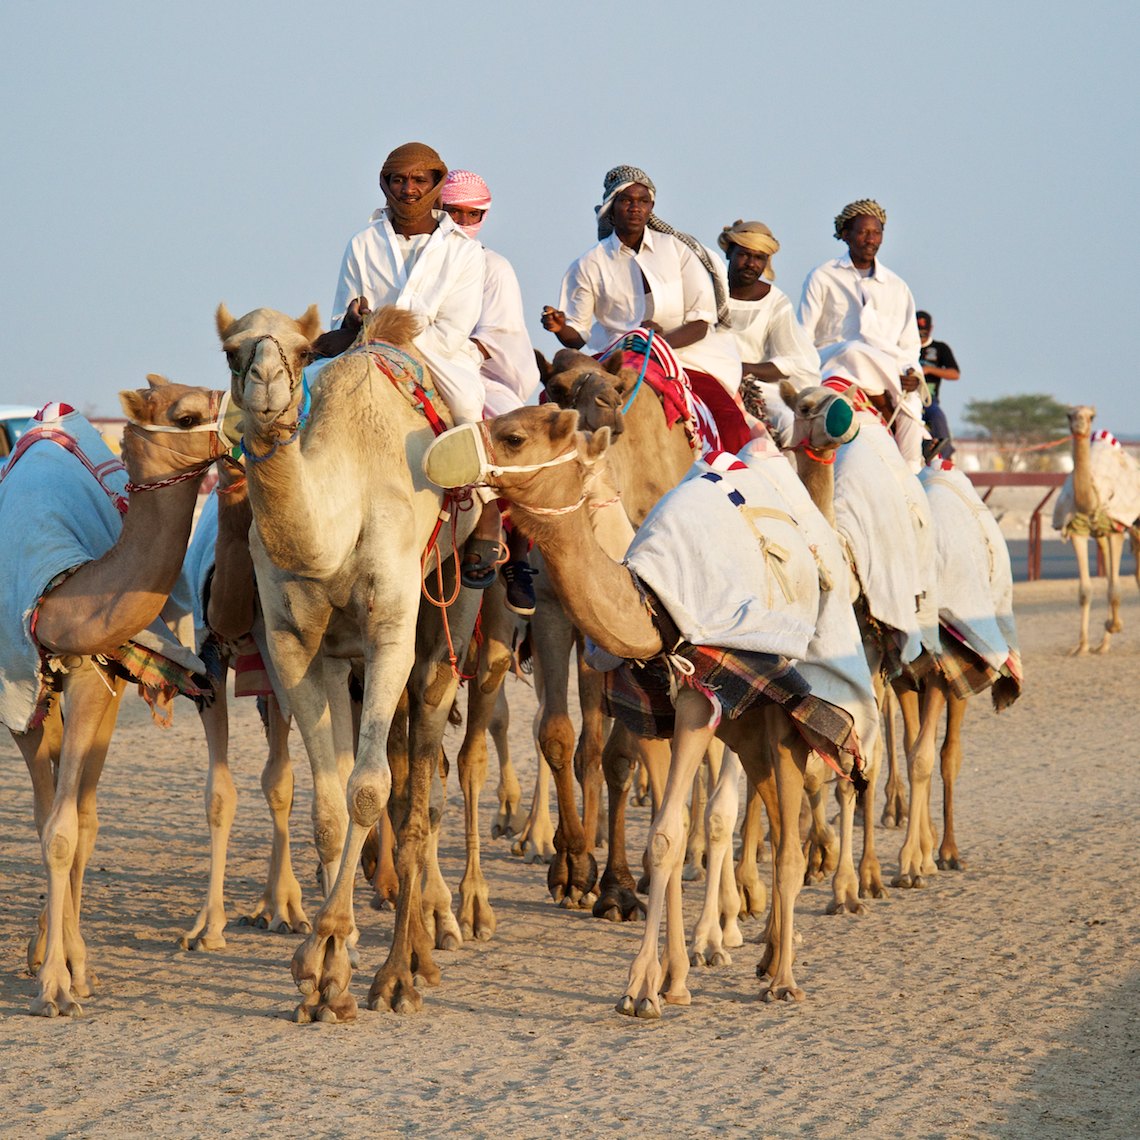 Qatar Al Shahaniya camel race training 1 001.jpg